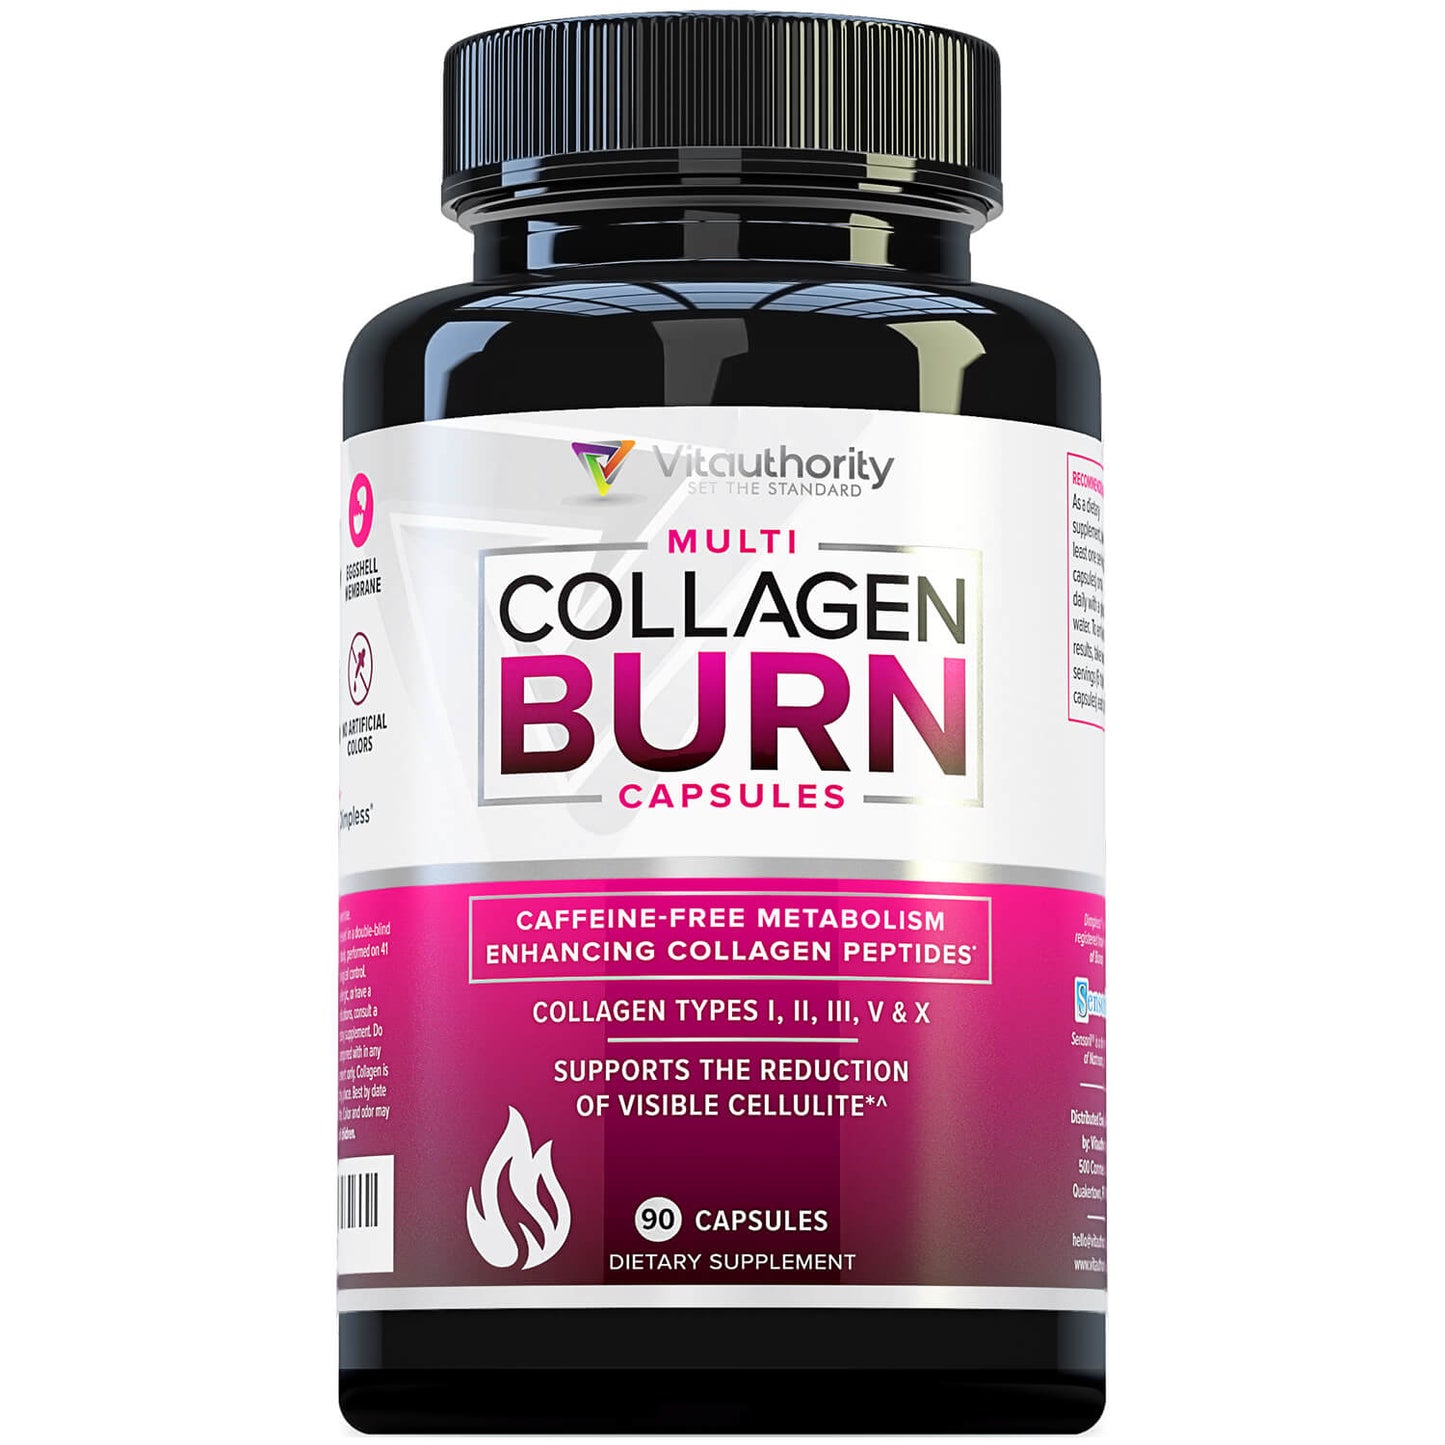 3 Bottles of Multi Collagen Burn Capsules